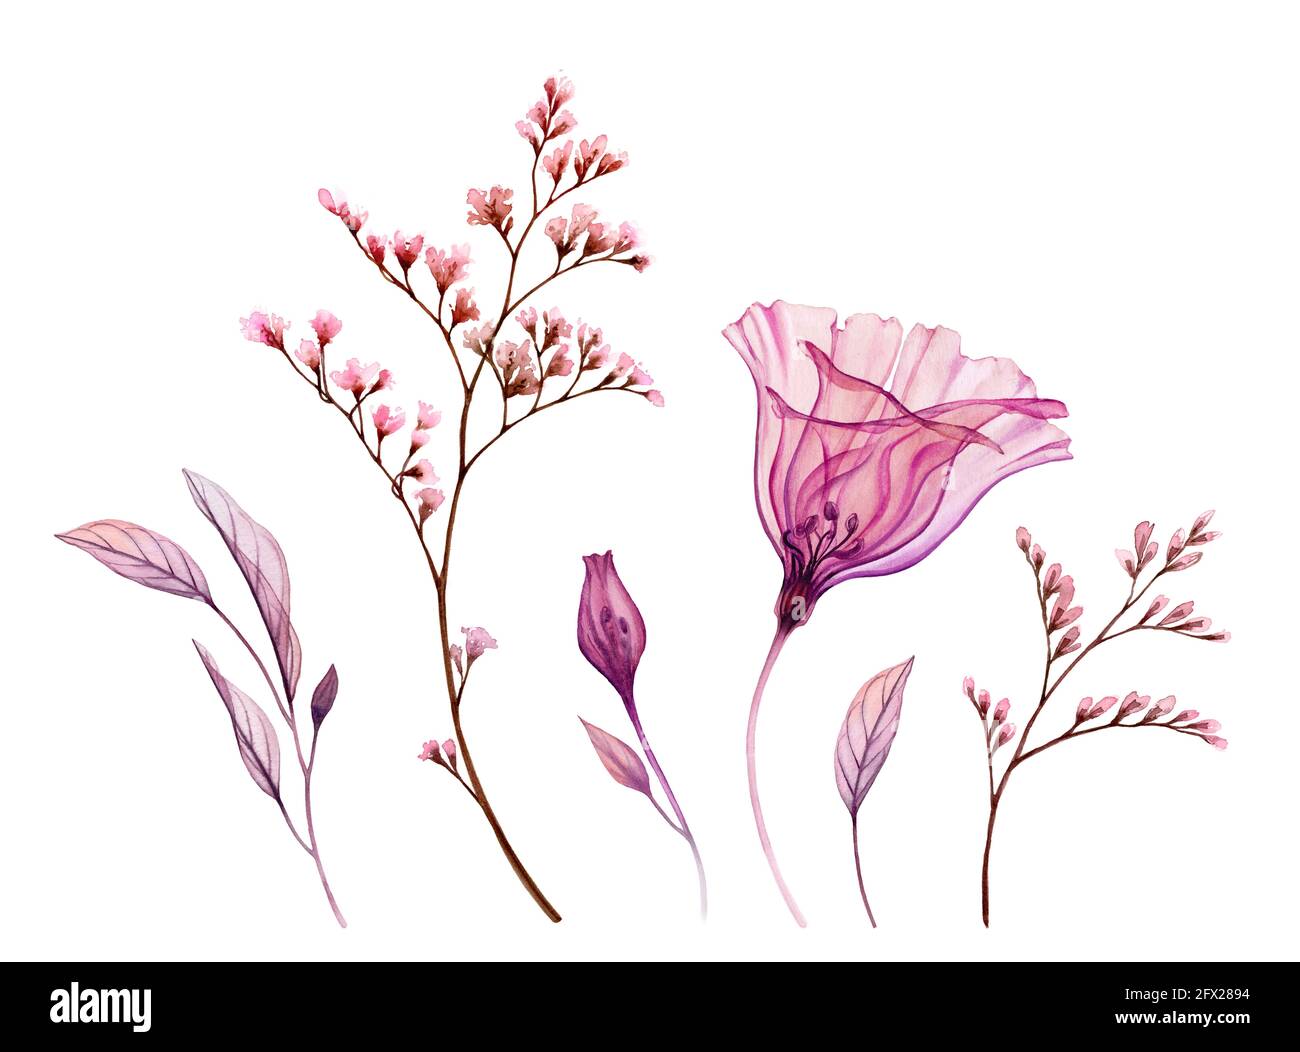 Fiori acquerelli. Collezione di fiori, foglie, pennelli trasparenti di colore rosa arrossato. Design isolato dipinto a mano. Botanico Foto Stock